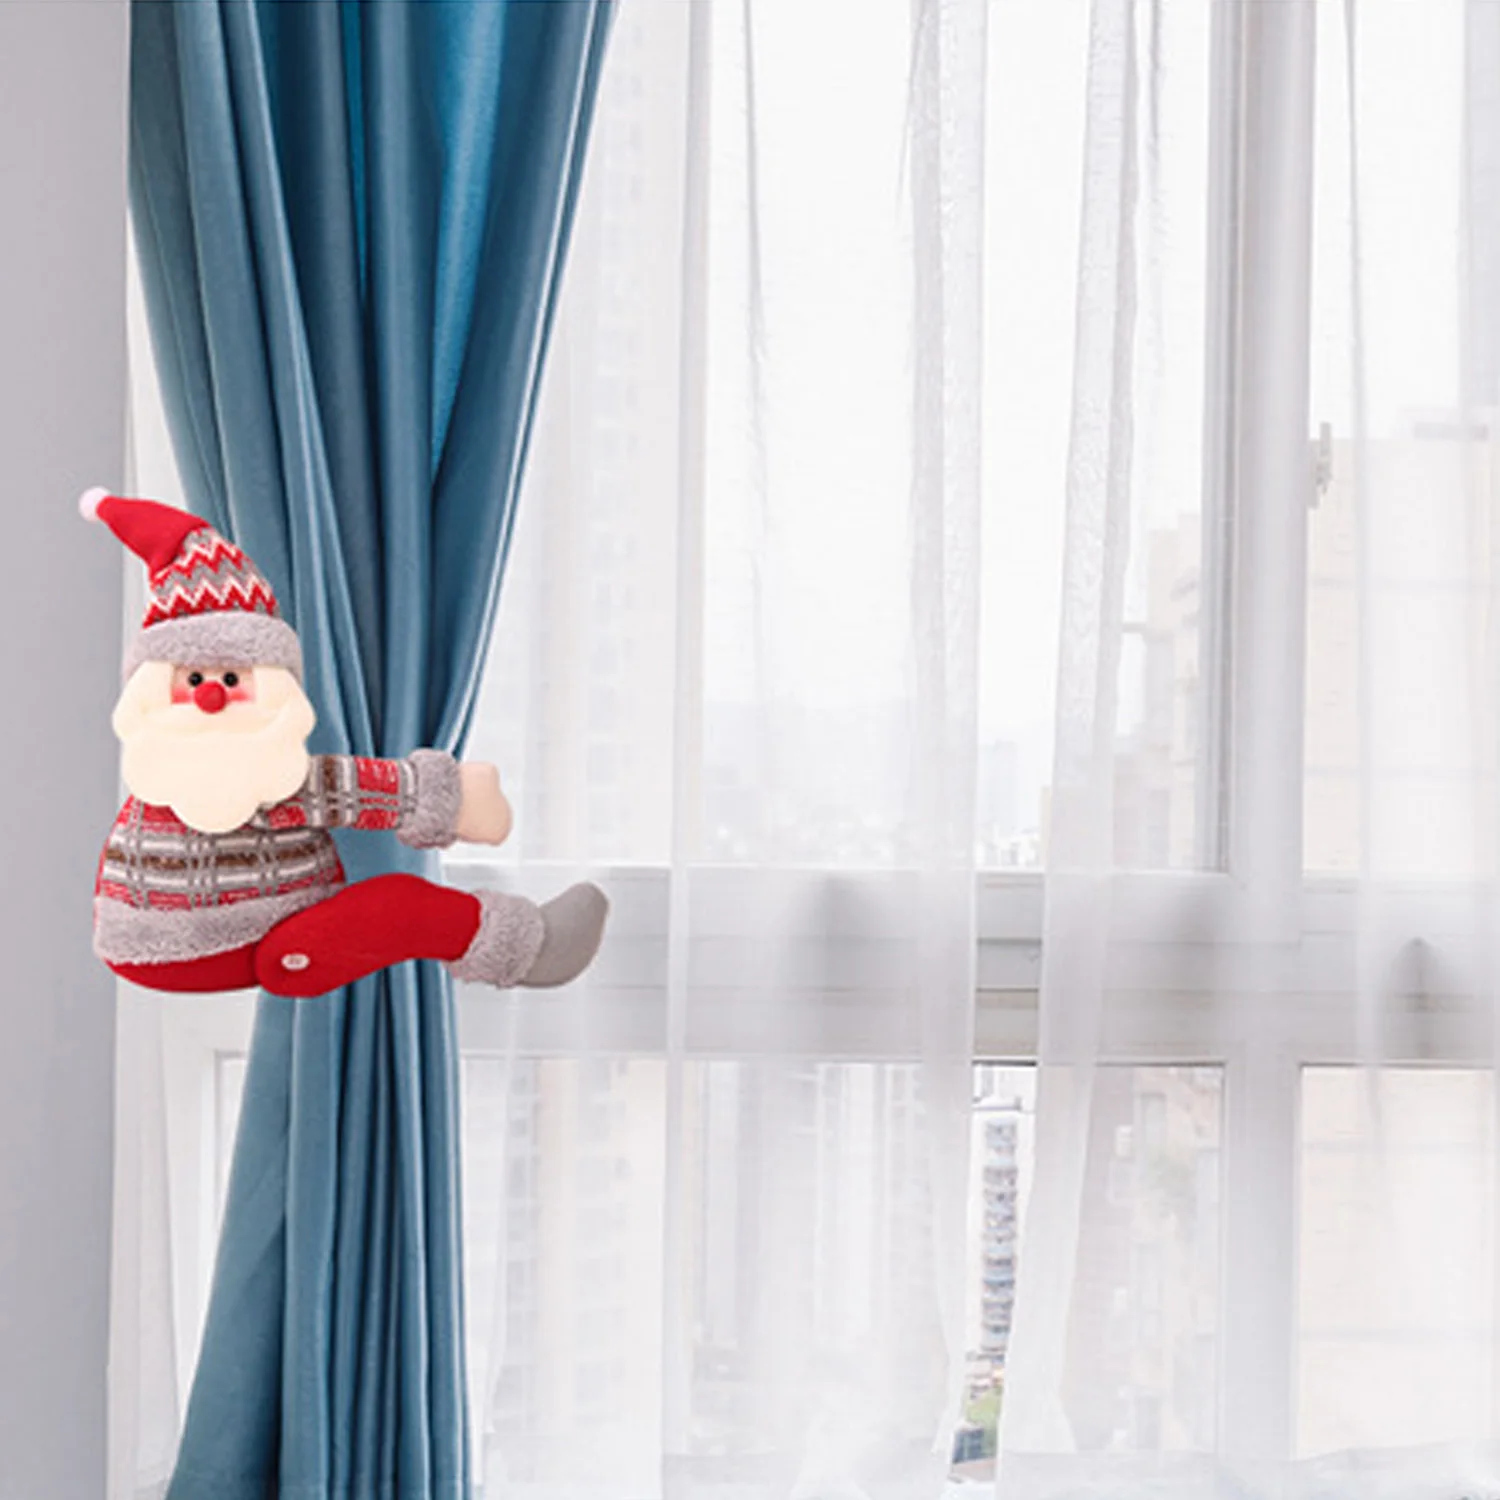 Милый Забавный Рождественский мультфильм Санта-Клаус Снеговик Лось кукла игрушки подарки занавеска Tieback окно Xmas фенечки игрушка подарок